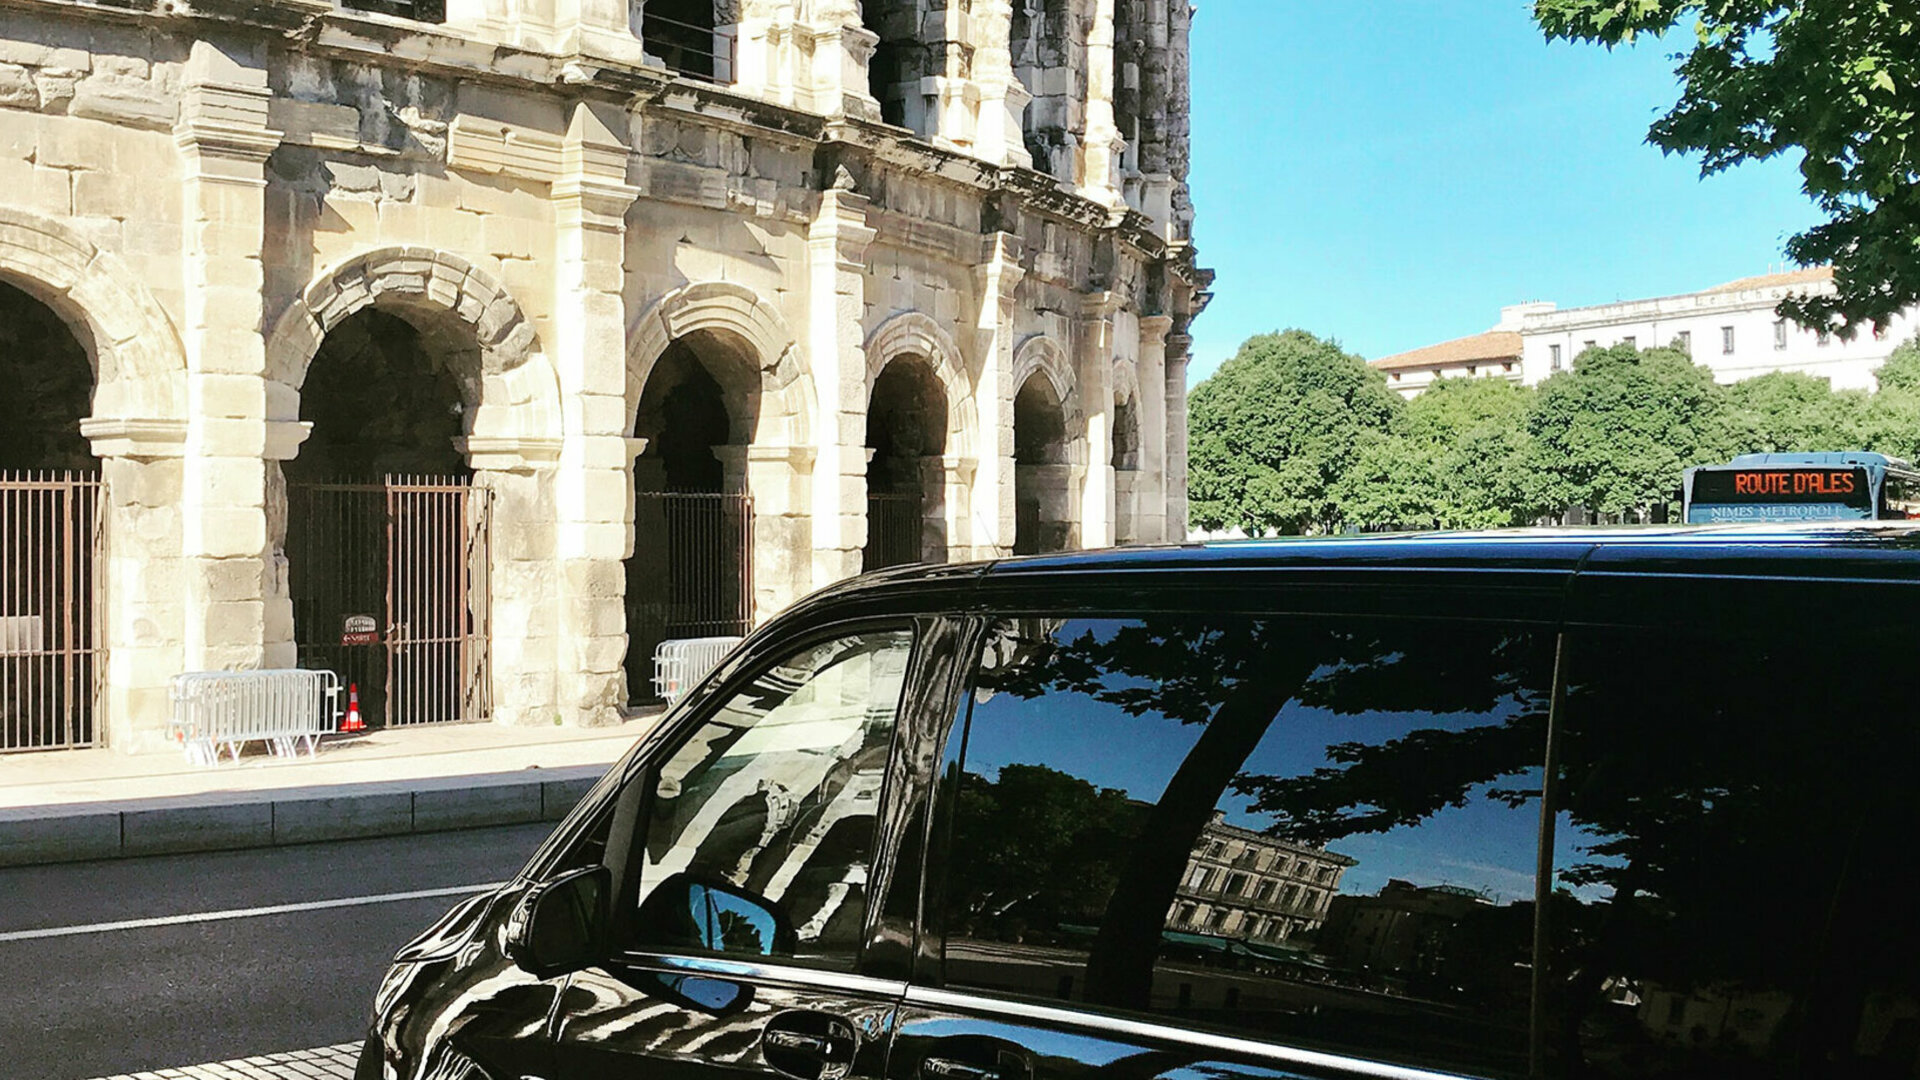 MYCAB LUXURY VTC chauffeur privé avec voiture de luxe dans le Gard, Hérault, Aude et Vaucluse